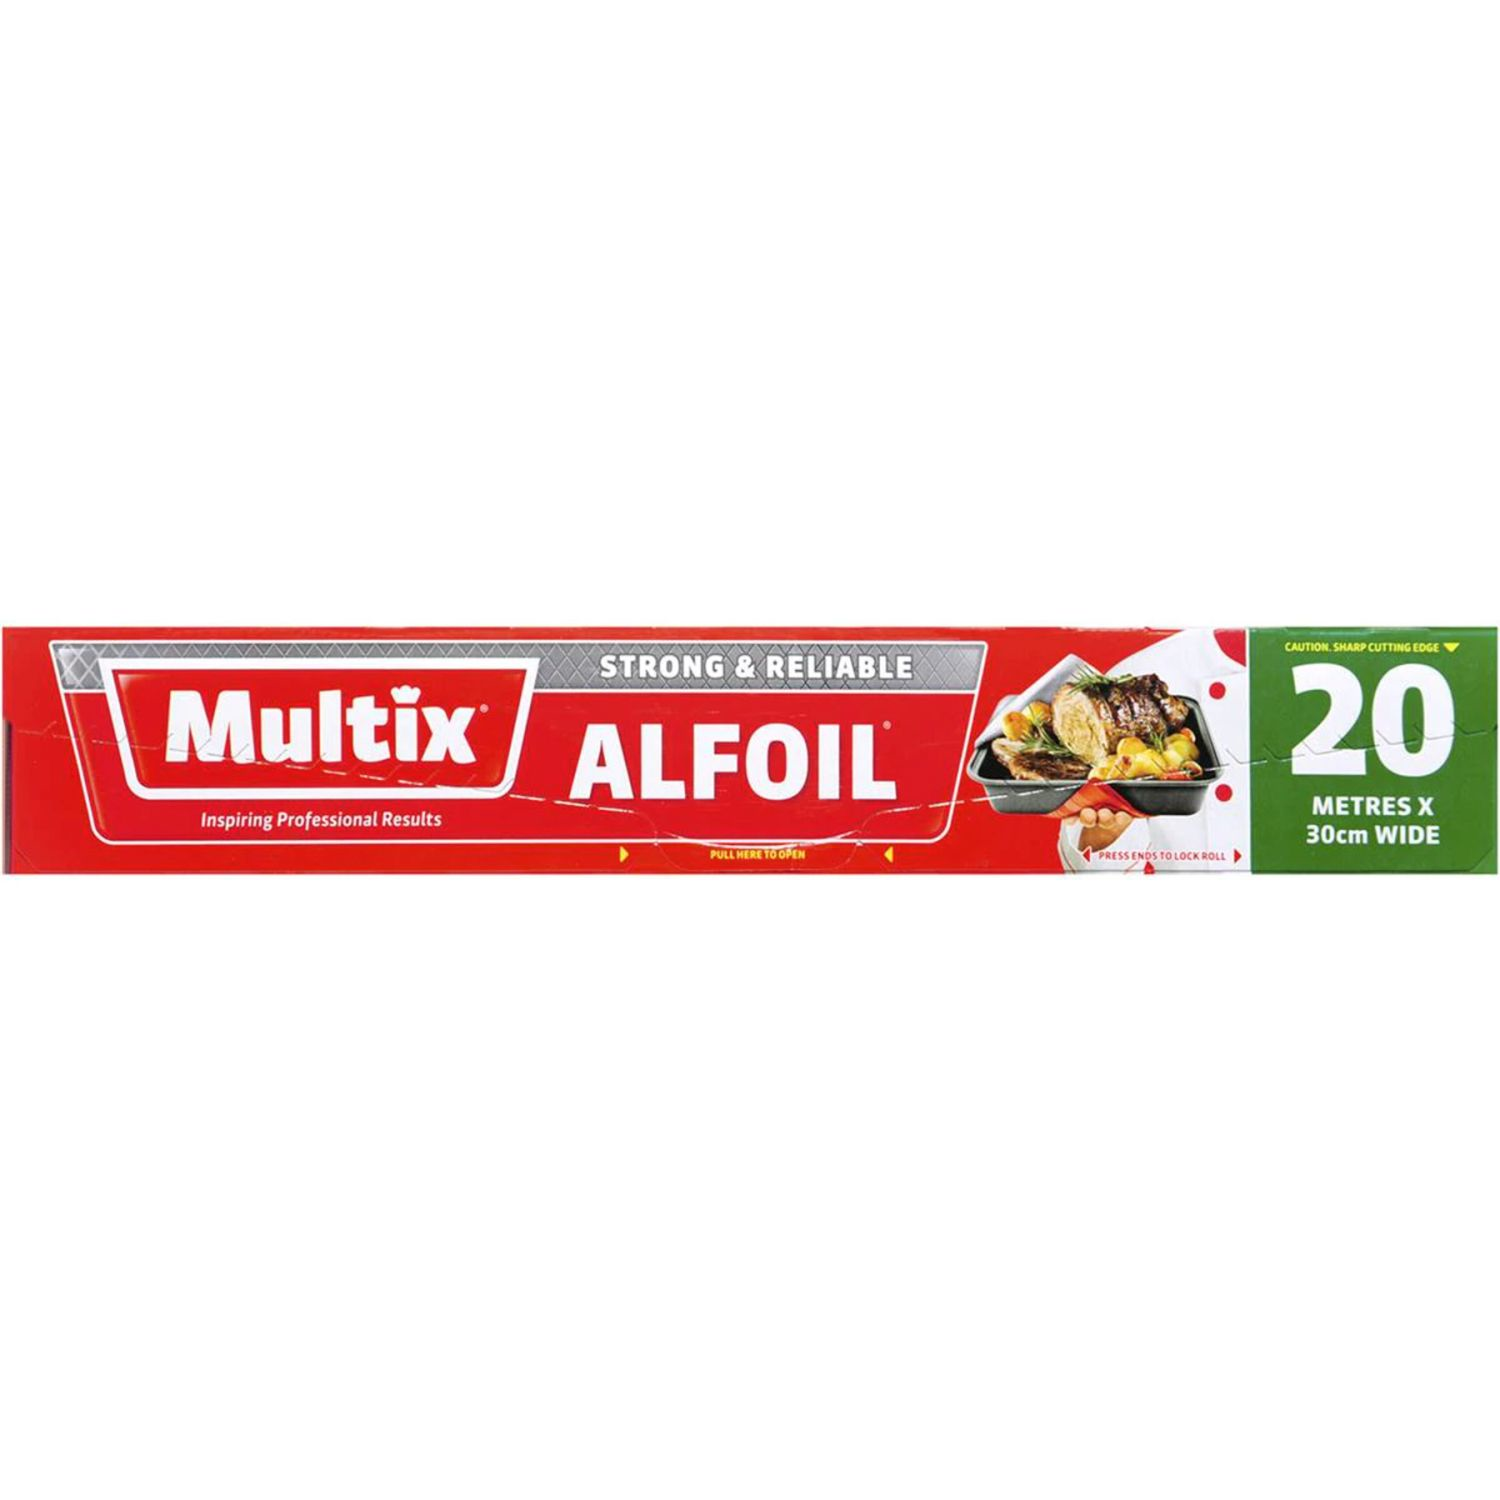 Multix Aluminium Foil 20m, 1 Each